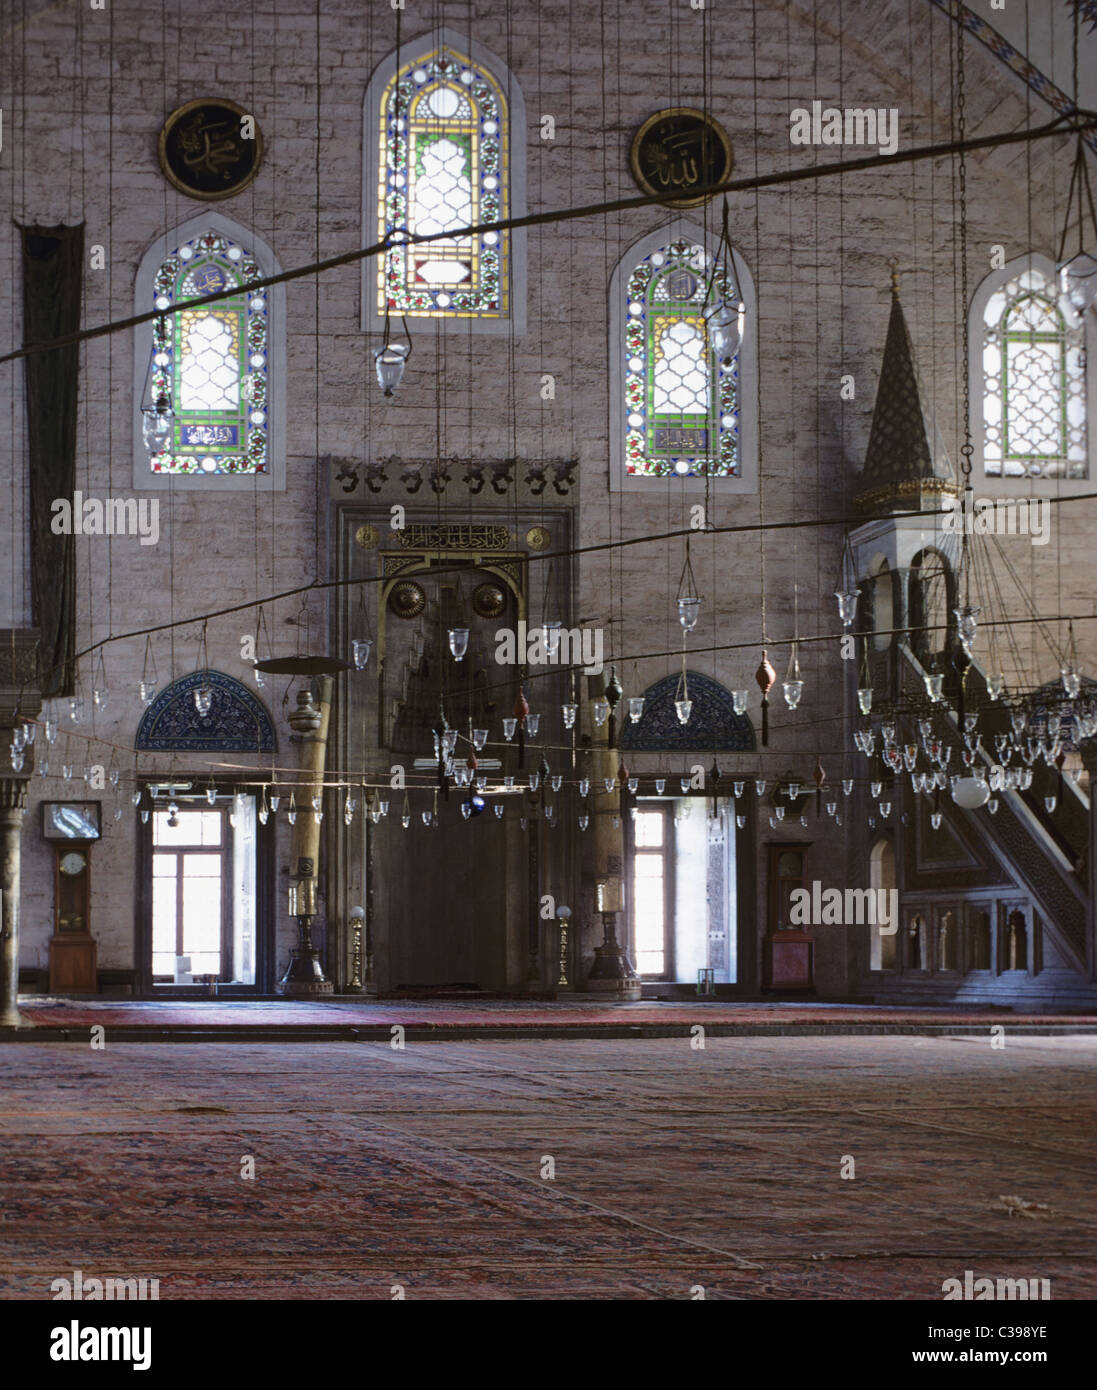 All'interno del Sultano Selim Camii, İstanbul, Turchia 690224 105 Foto Stock